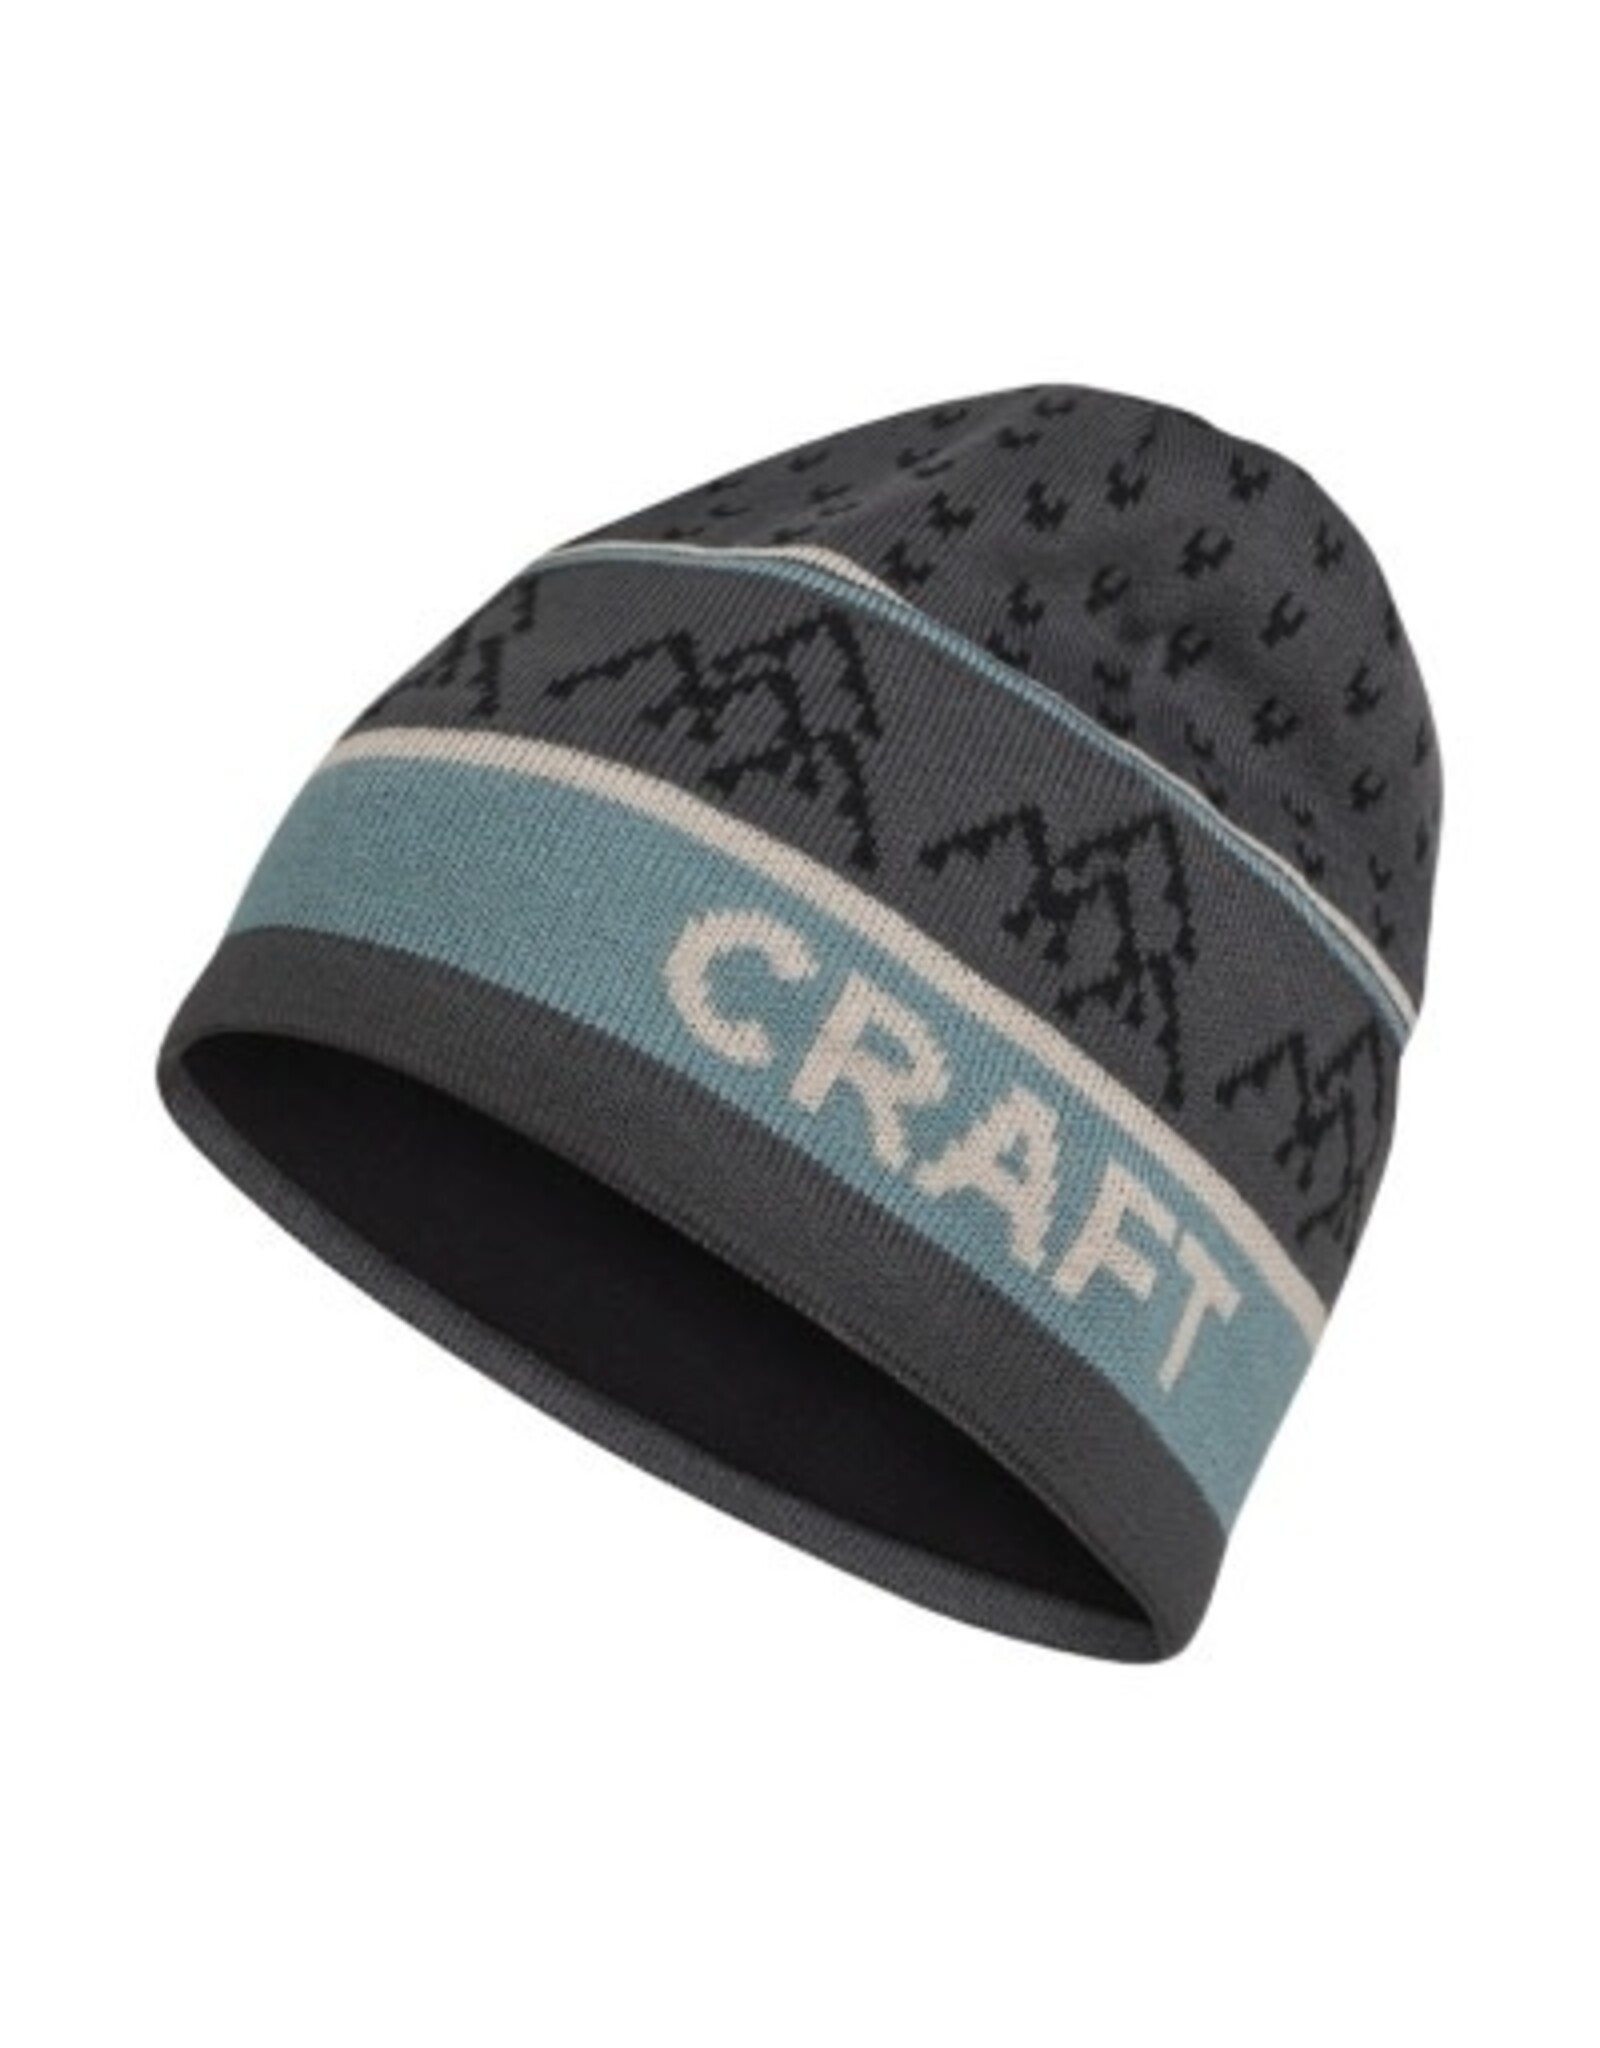 Craft Sportswear USA Craft core backcountry knit hat